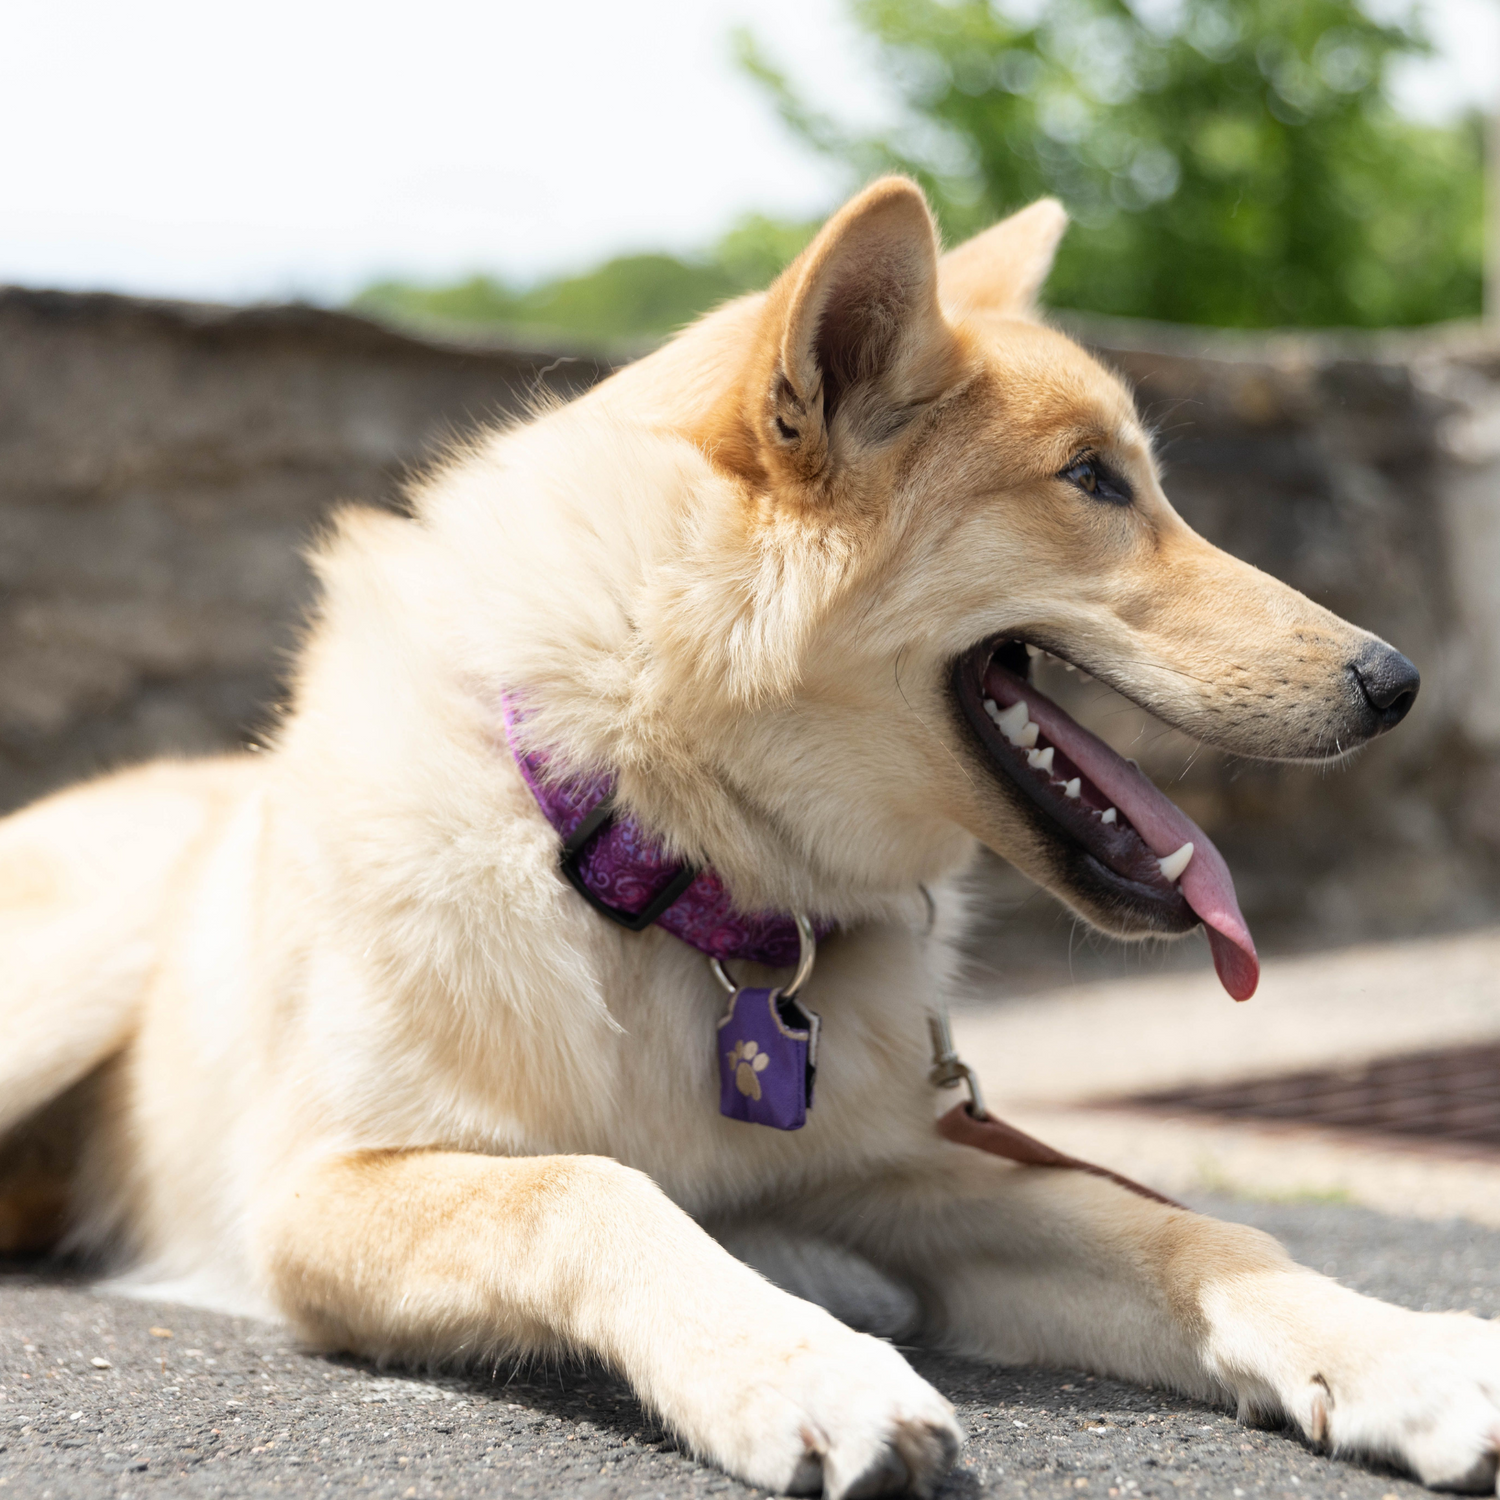 Purple dog tag silencer and collar shown on brown dog